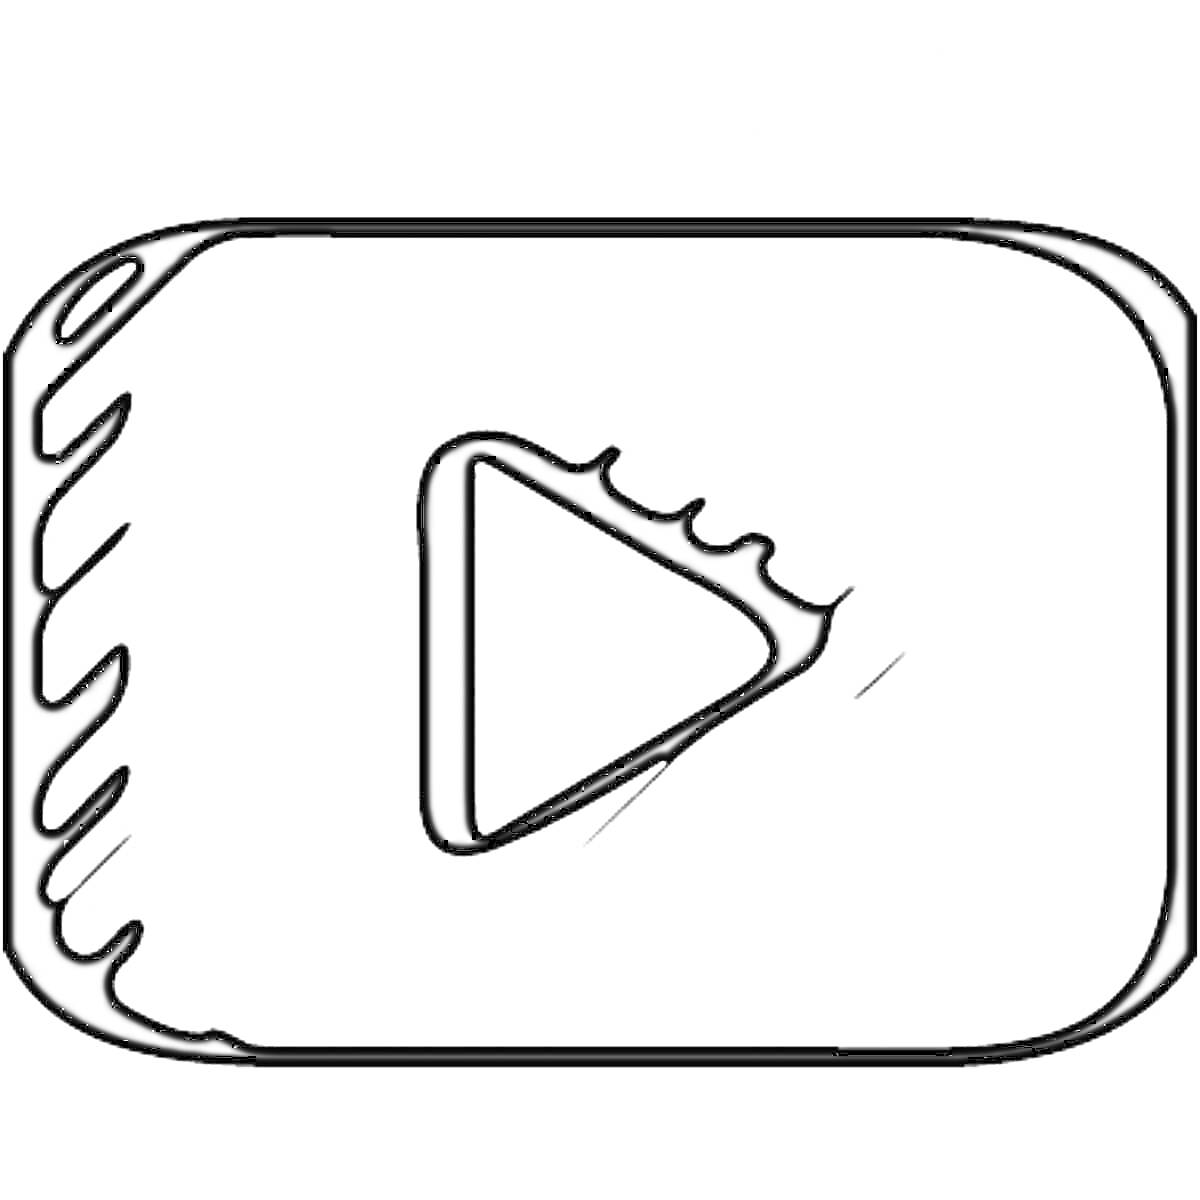 Логотип Ютуб с кнопкой воспроизведения